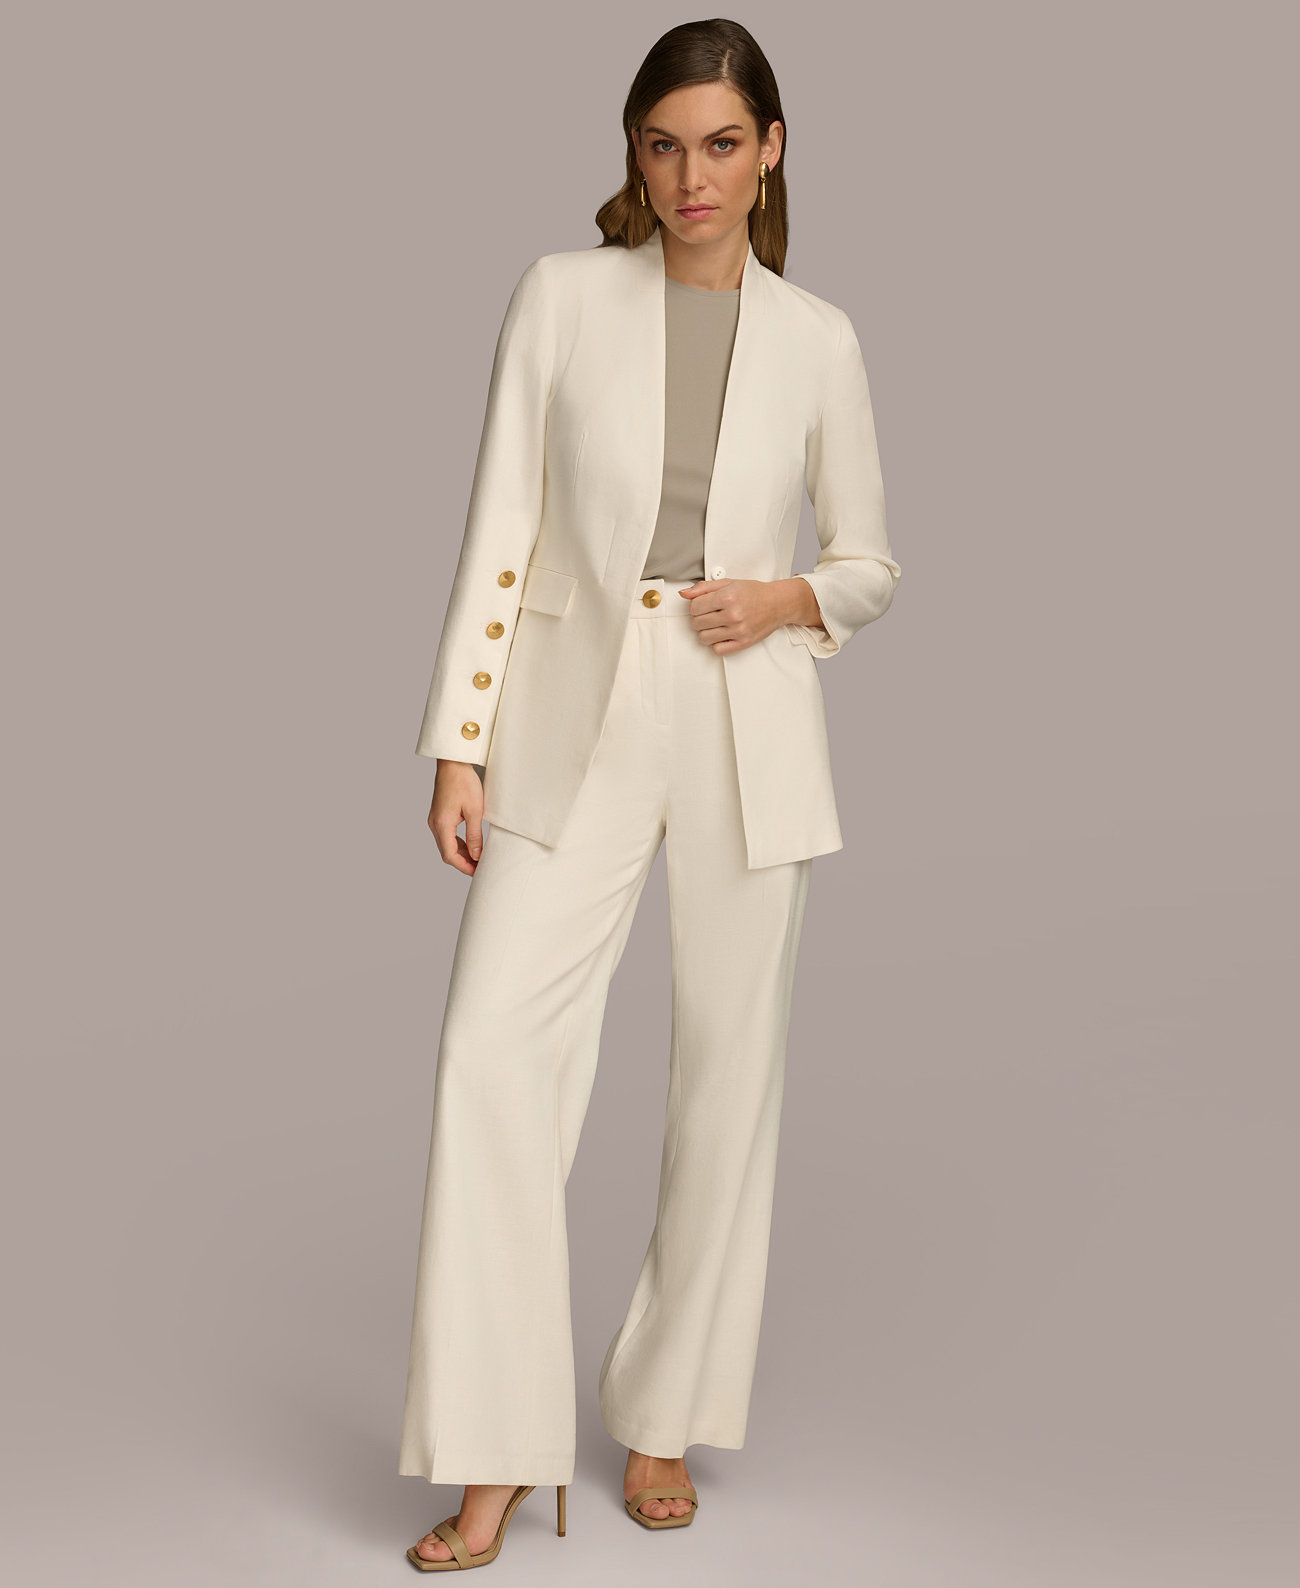 Women's Linen-Blend Button-Sleeve Blazer Donna Karan New York